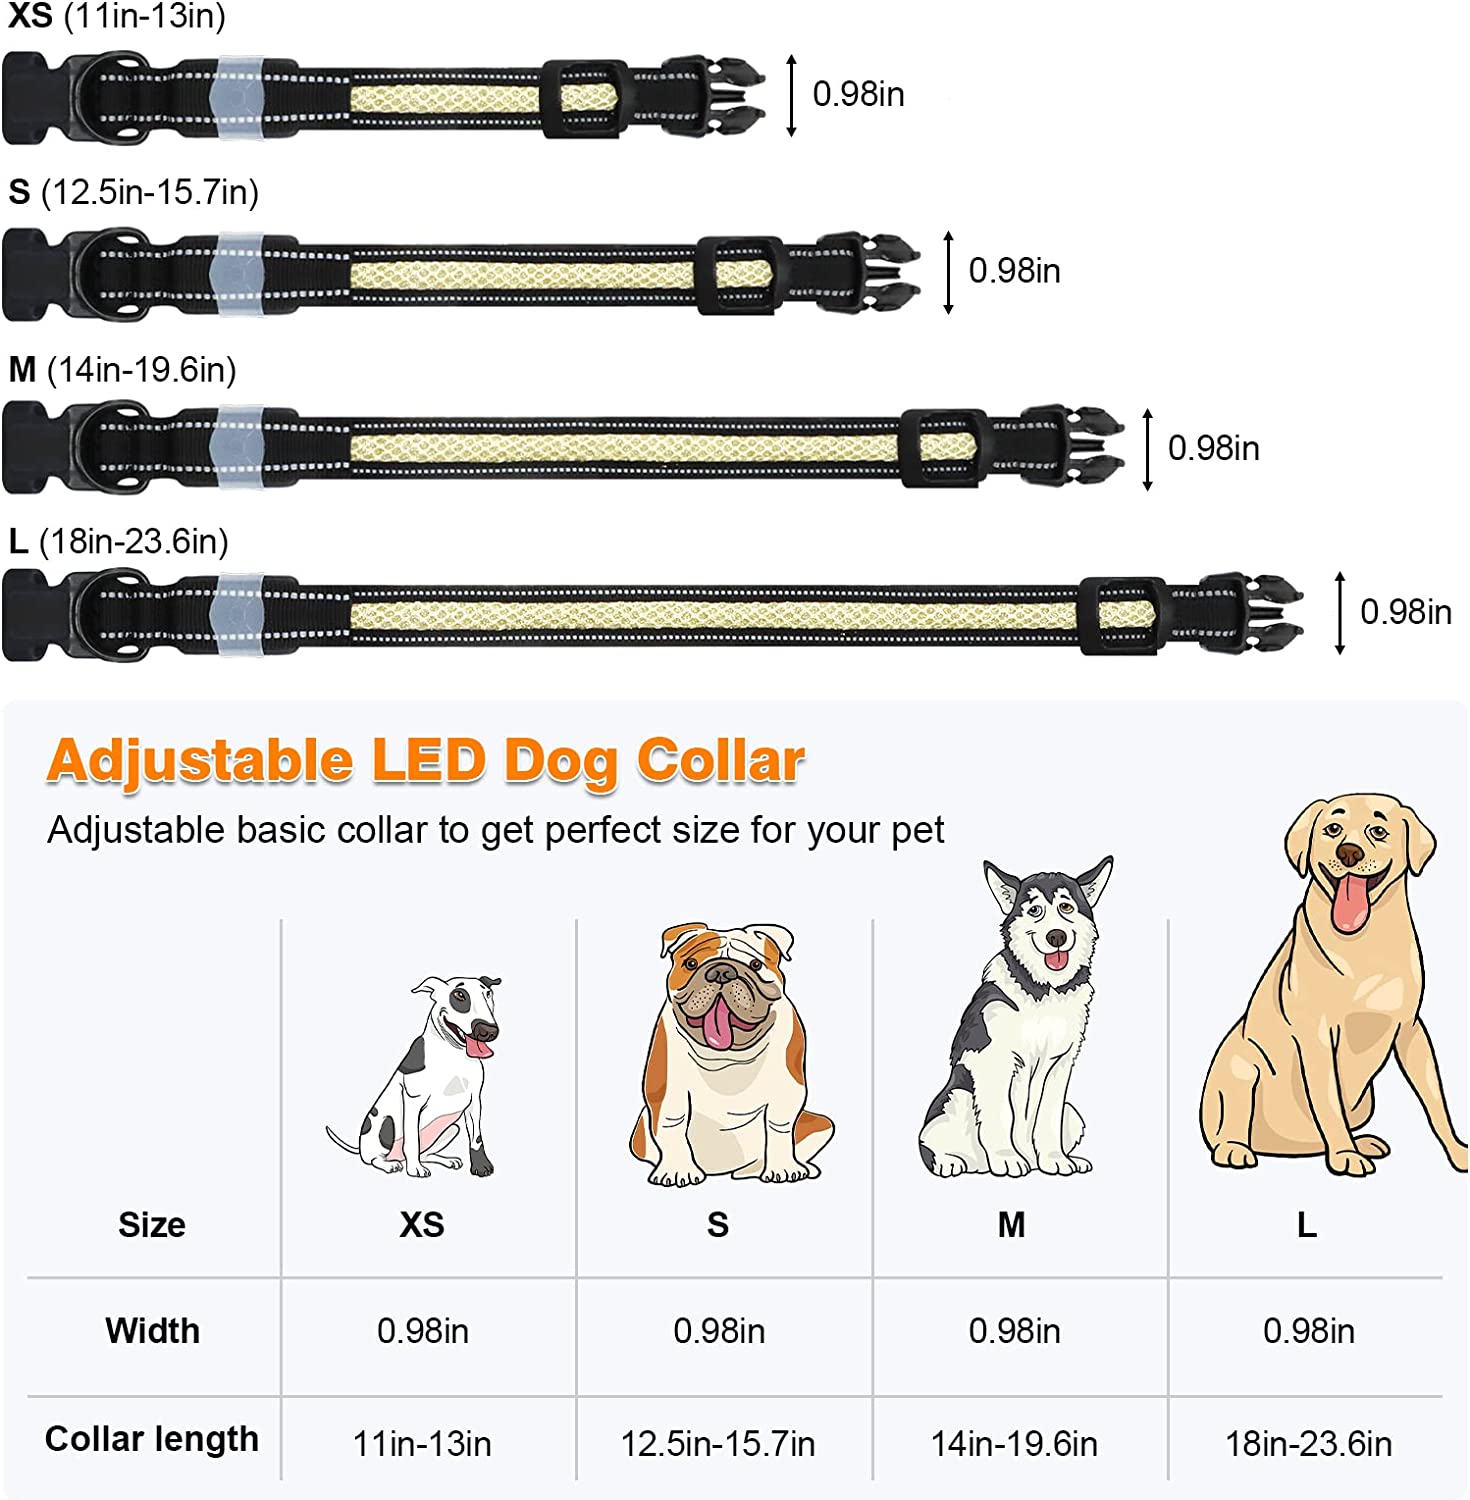 با فشار طولانی کنترلر روی حلقه سگ می توانید نور را روشن و خاموش کنید، فشار کوتاه می تواند رنگ های متنوعی داشته باشد. سوئیچینگ